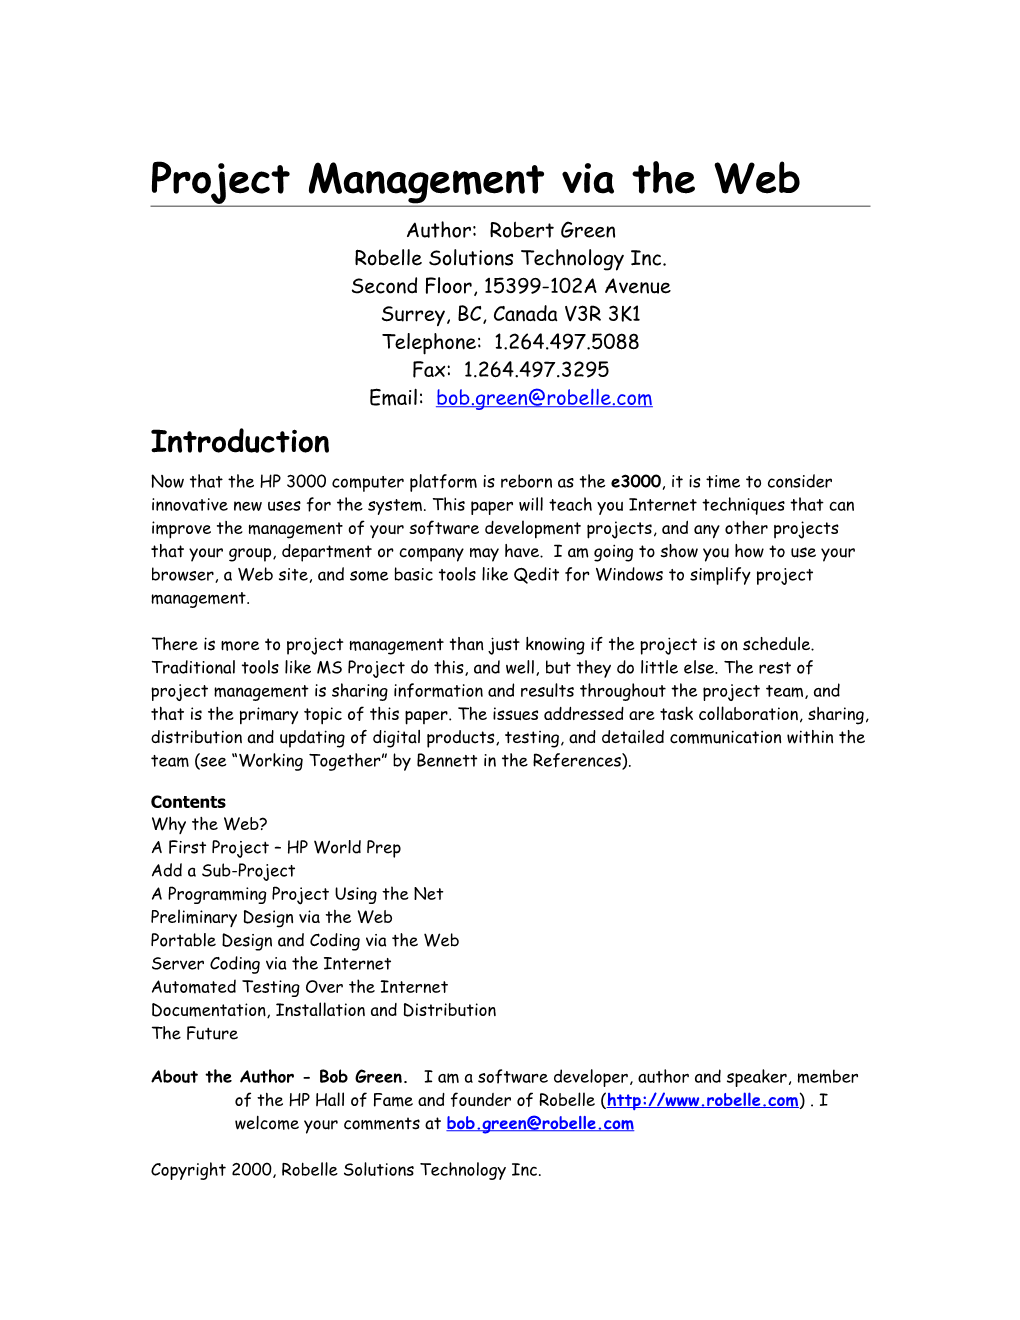 Project Management Via the Web